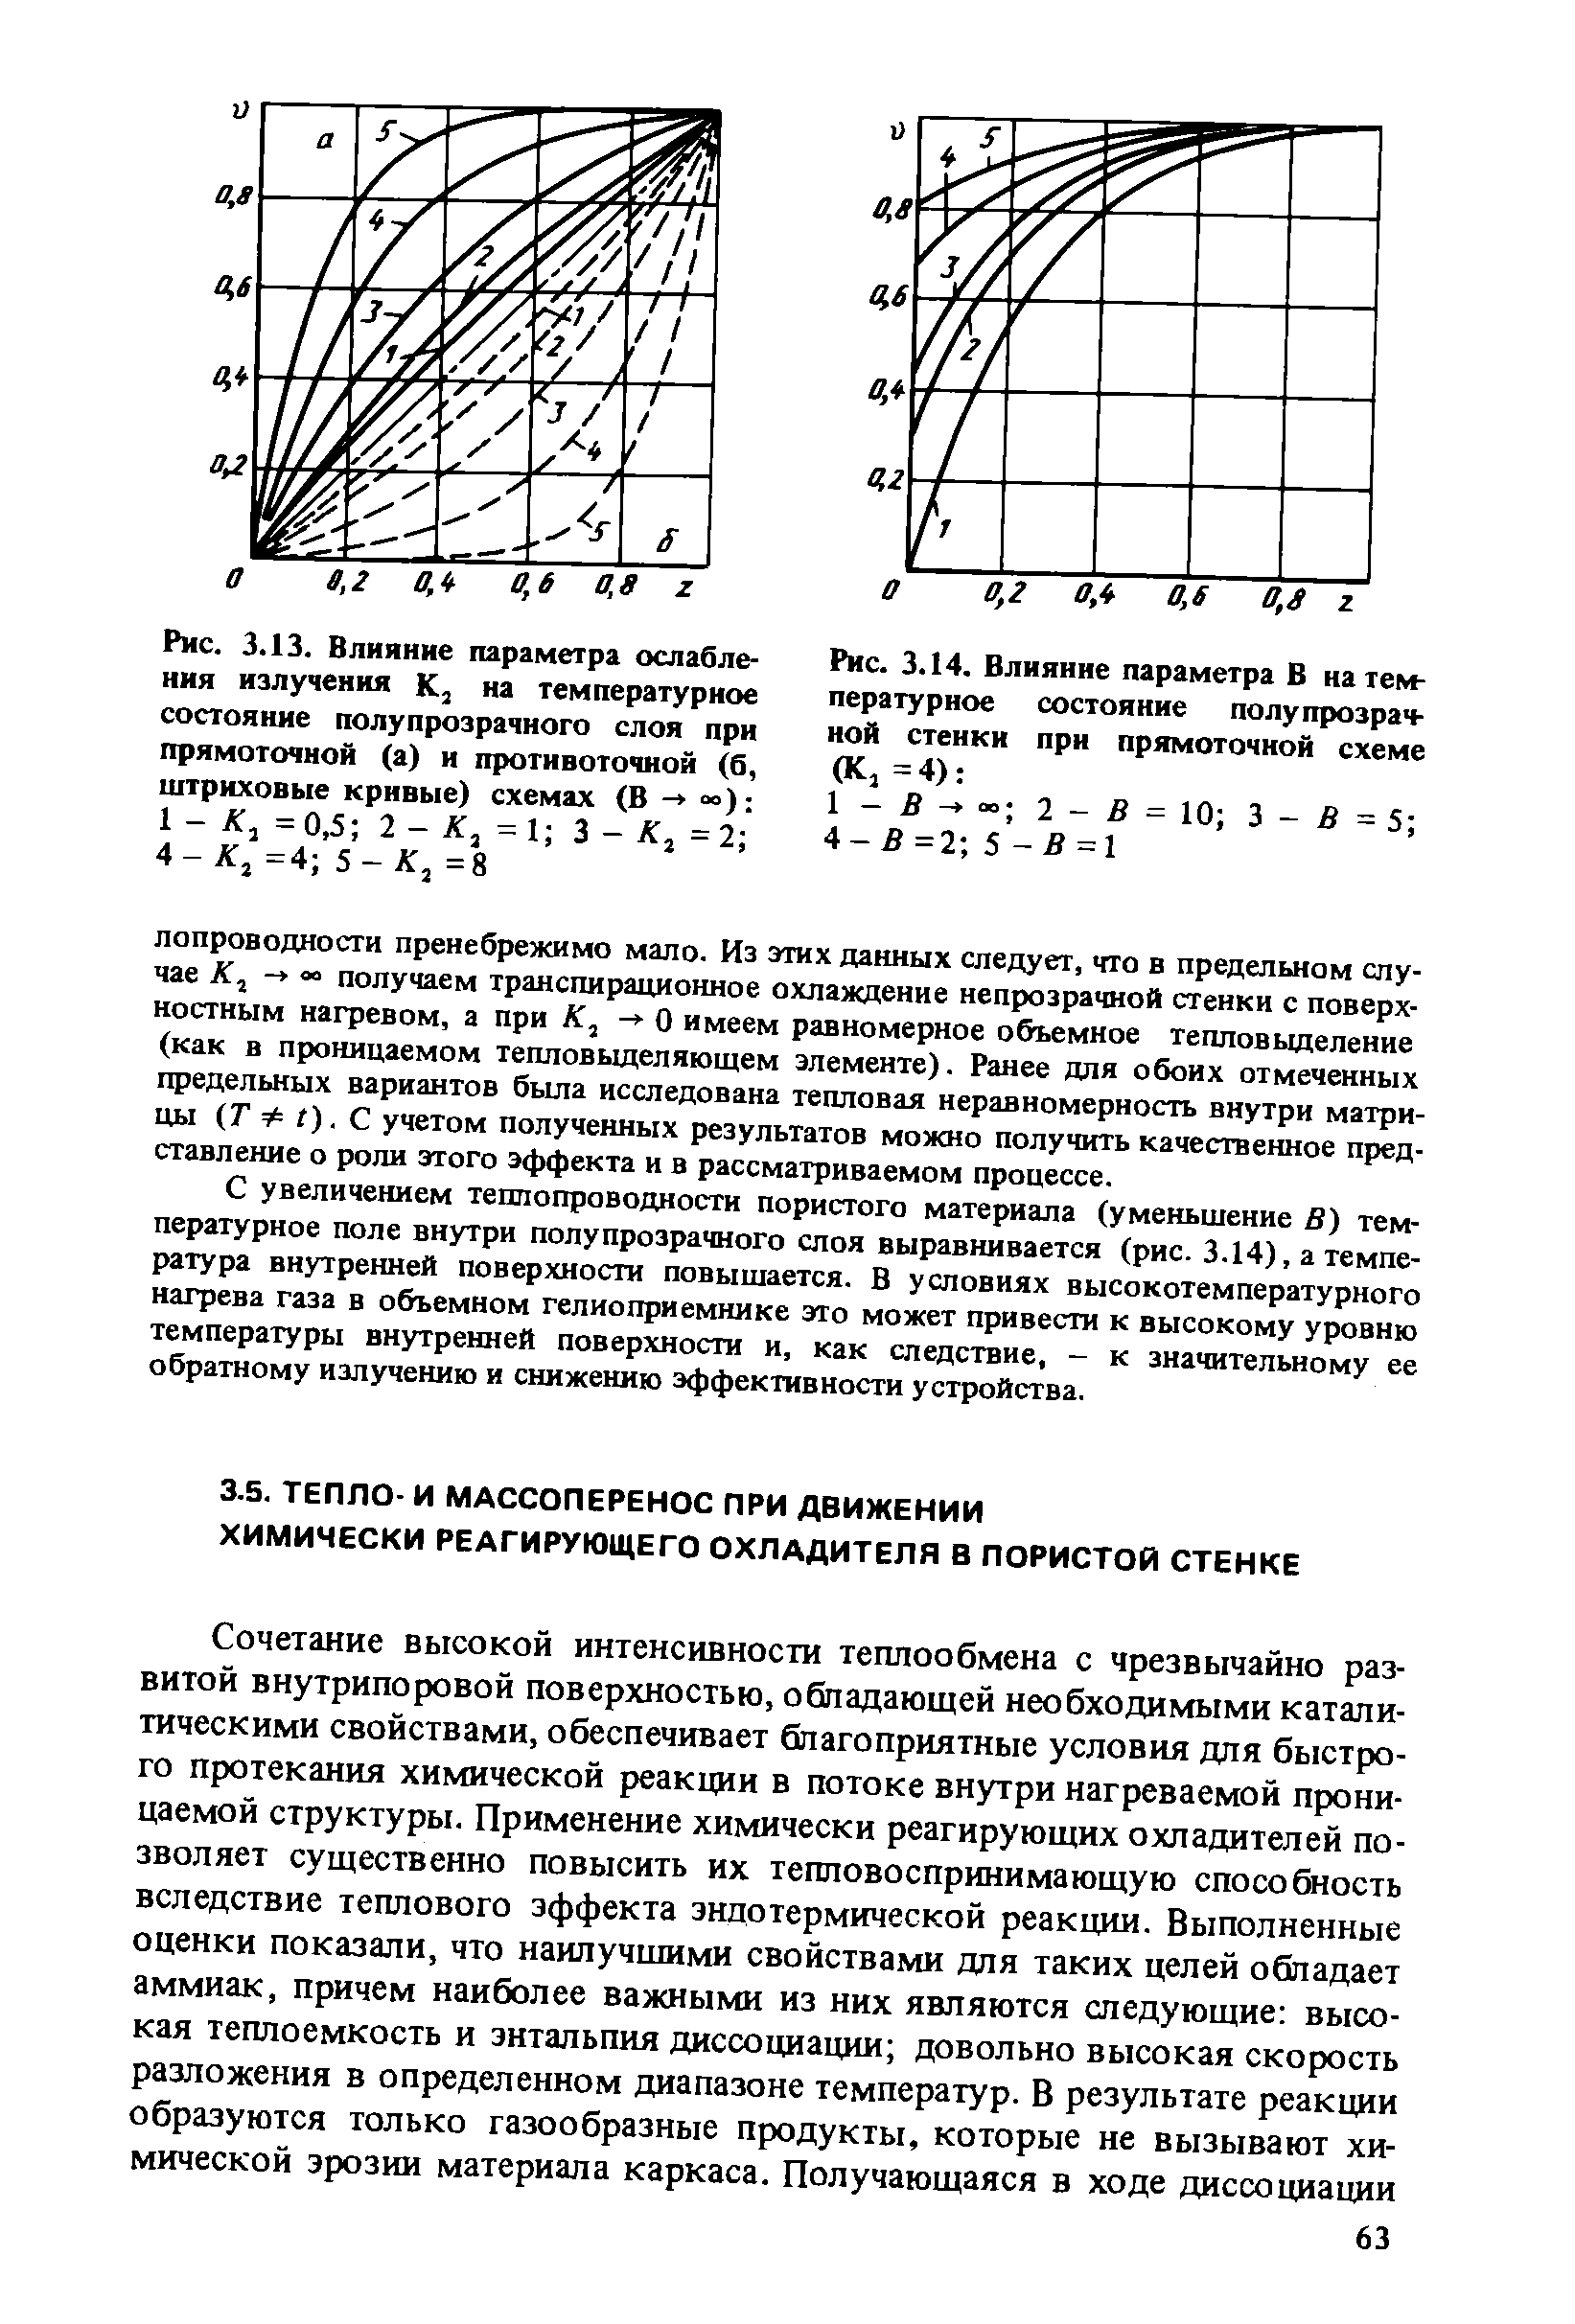 Рис. 3.14. Влияние параметра В на температурное состояние полупрозрачной стенки при прямоточной схеме (К, =4) 
